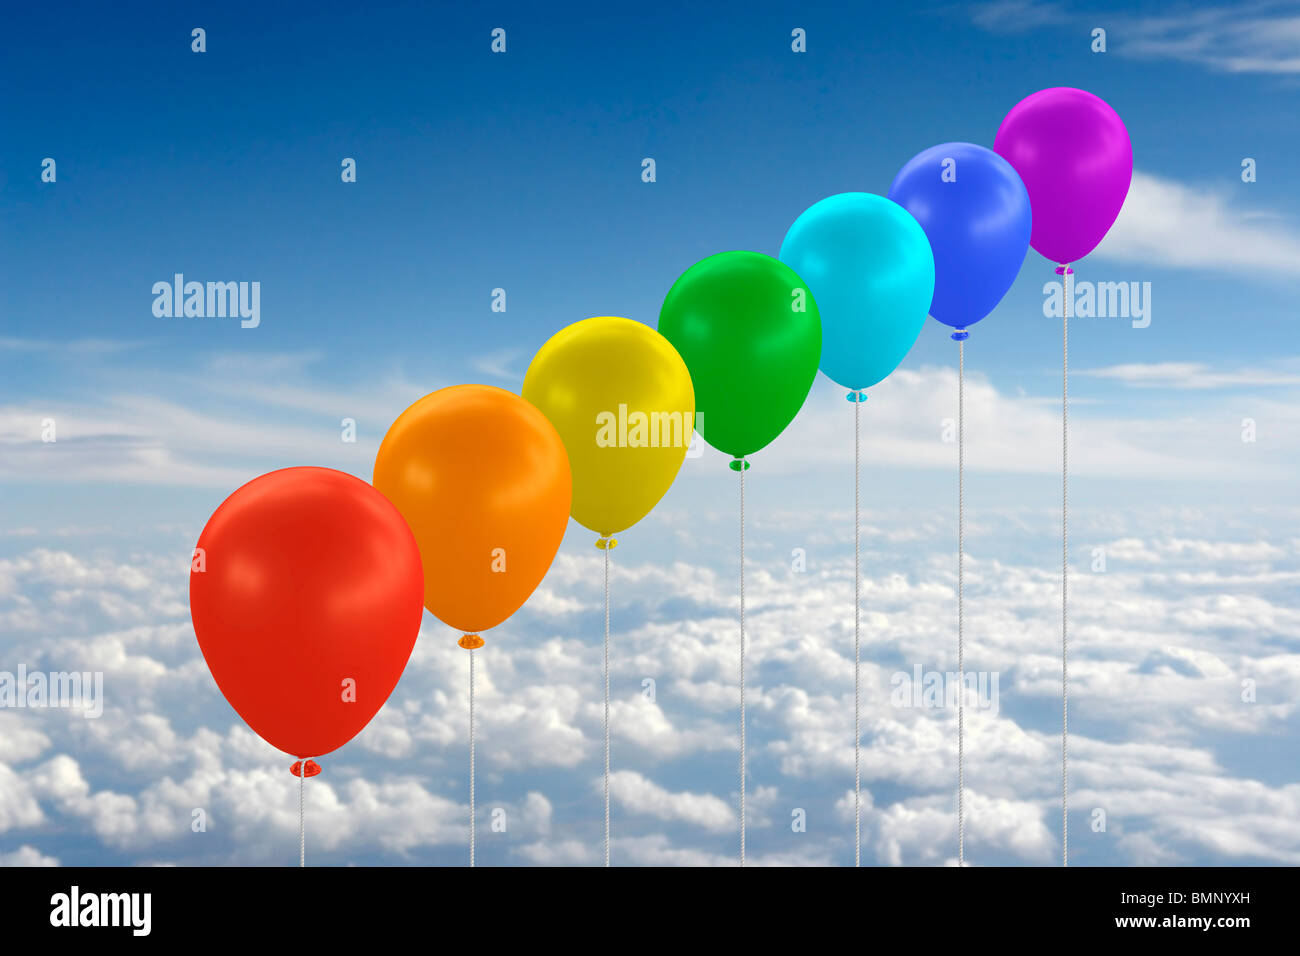 Ballons in Regenbogenfarben gegen blauen Himmel mit Wolken. Digital zu komponieren. Stockfoto